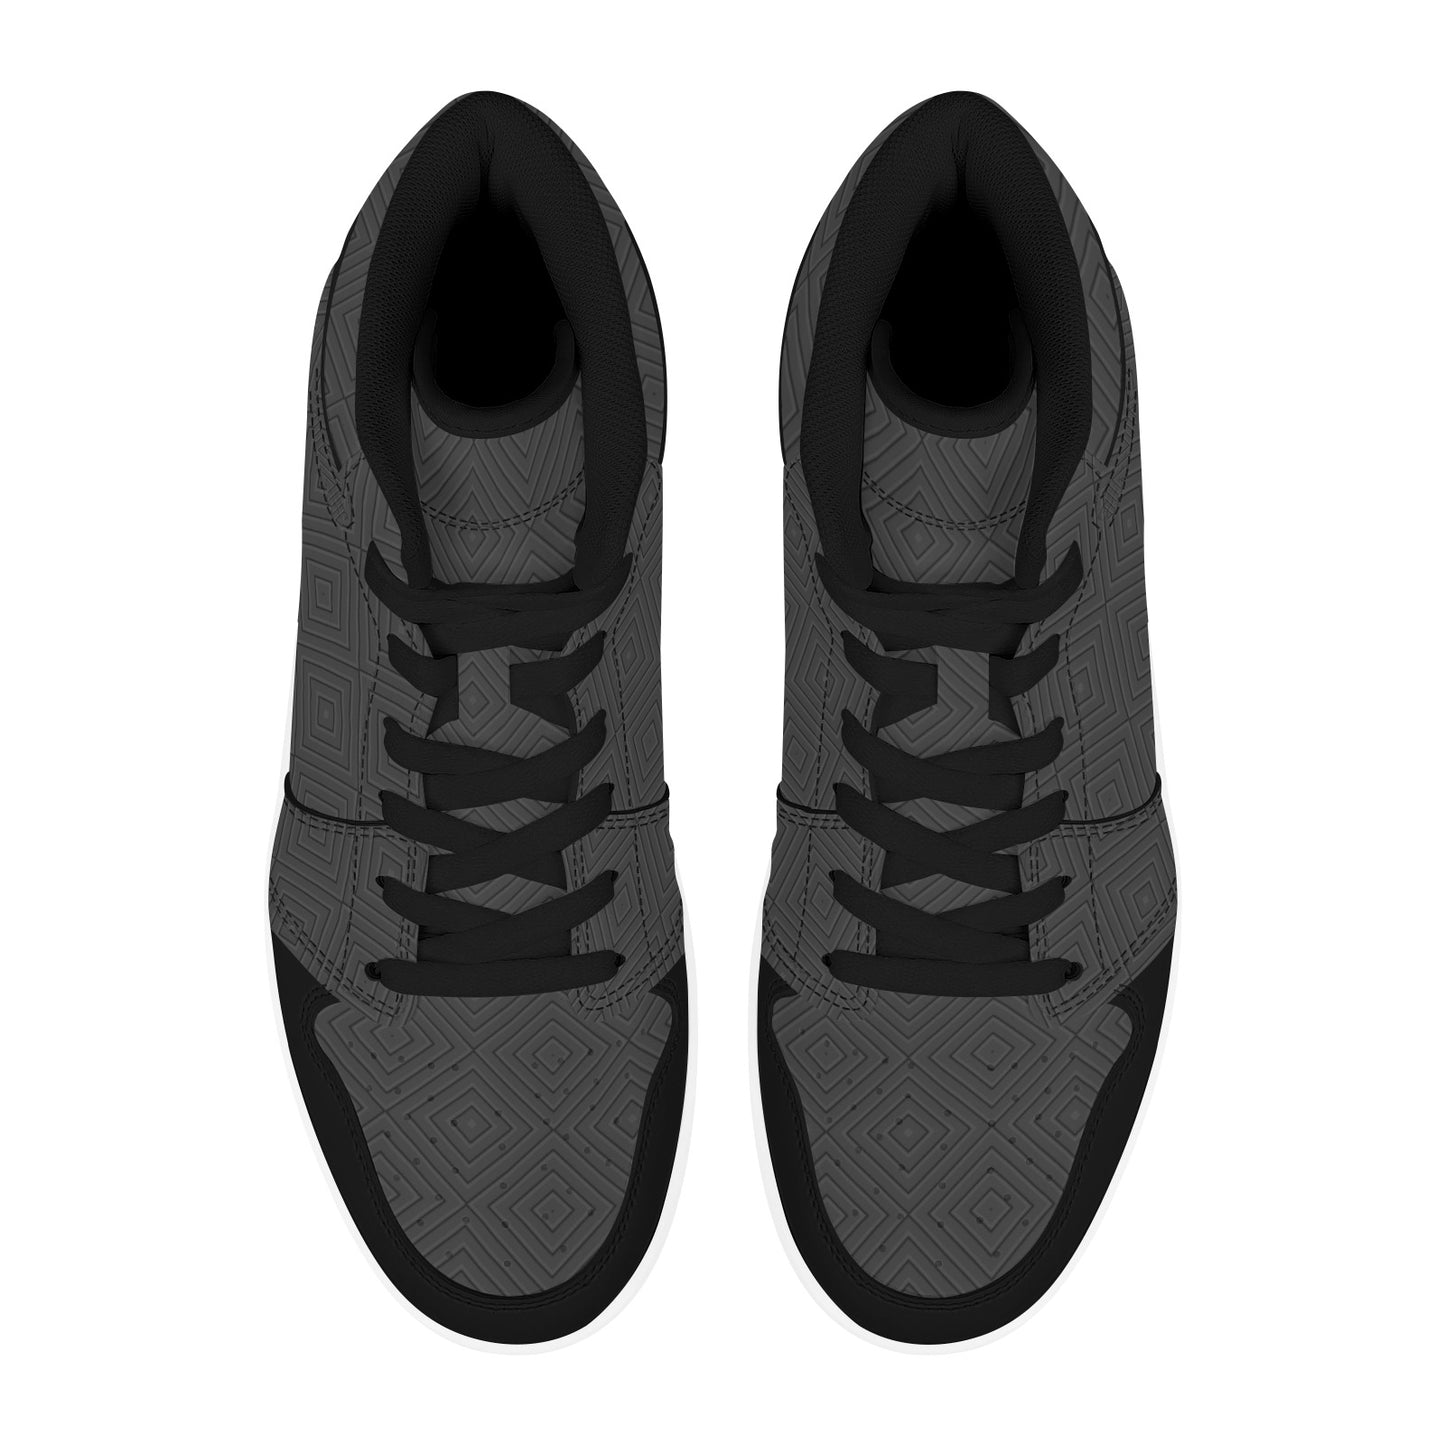 Black High Top Sneakers Black HIgh Top Sneakers Black Diamond Pattern Men's High Top Sneakers